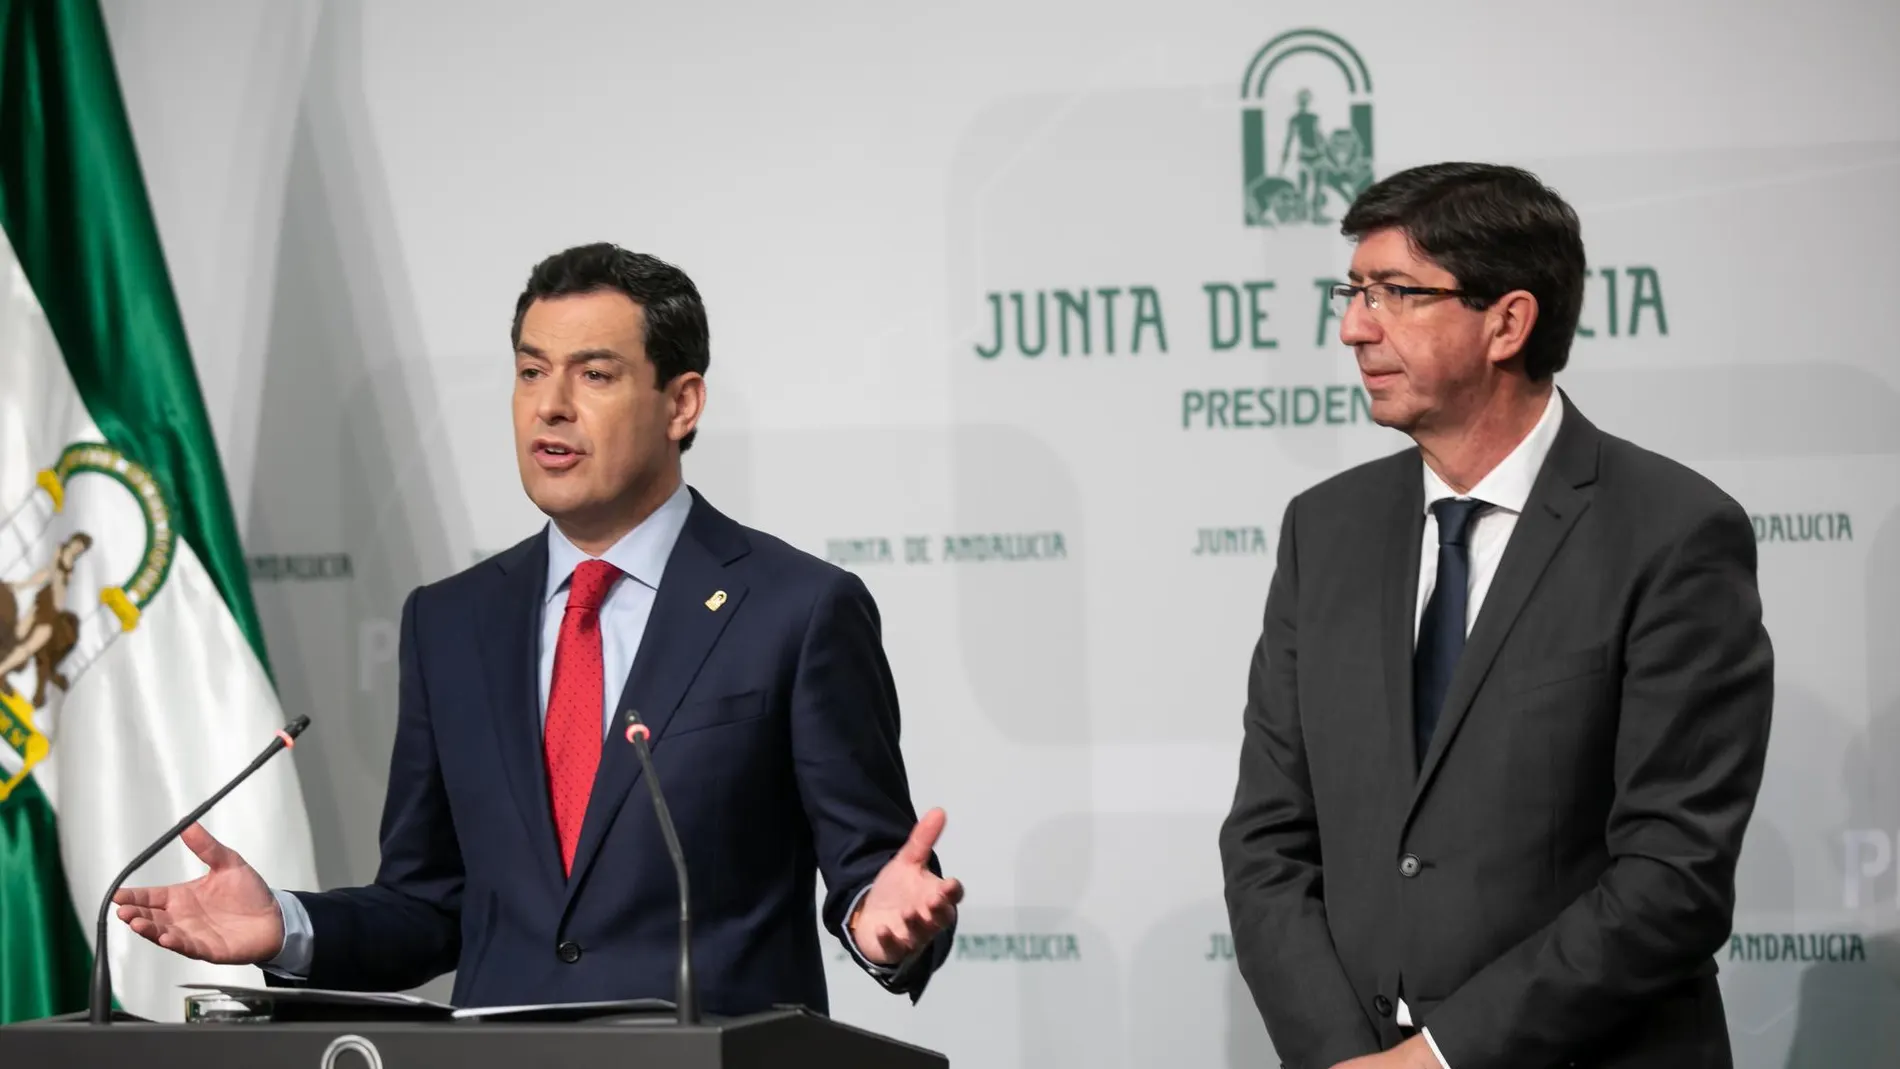 El presidente de la Junta de Andalucía, Juanma Moreno, junto al vicepresidente de la Junta, Juan Marín, en la rueda de prensa posterior a la reunión semanal del Consejo de Gobierno de la Junta de Andalucía / EP